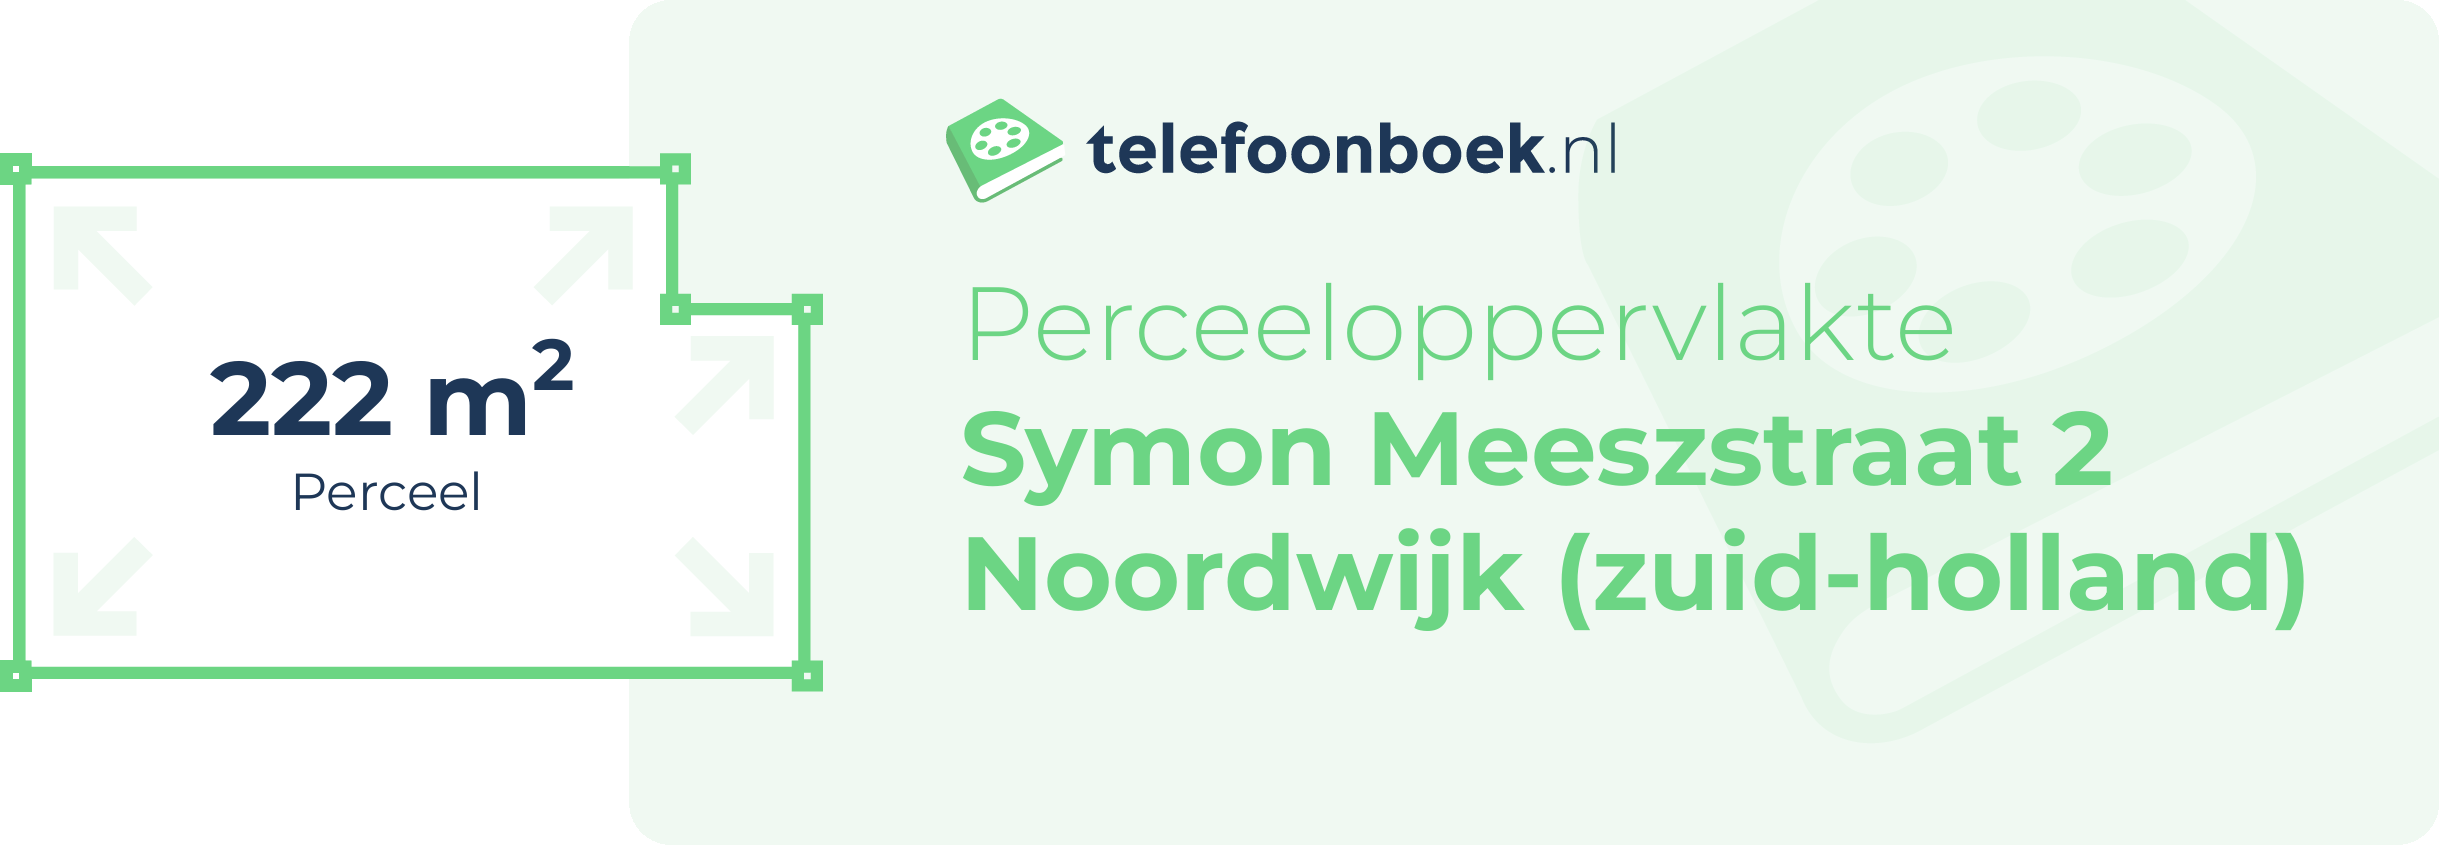 Perceeloppervlakte Symon Meeszstraat 2 Noordwijk (Zuid-Holland)